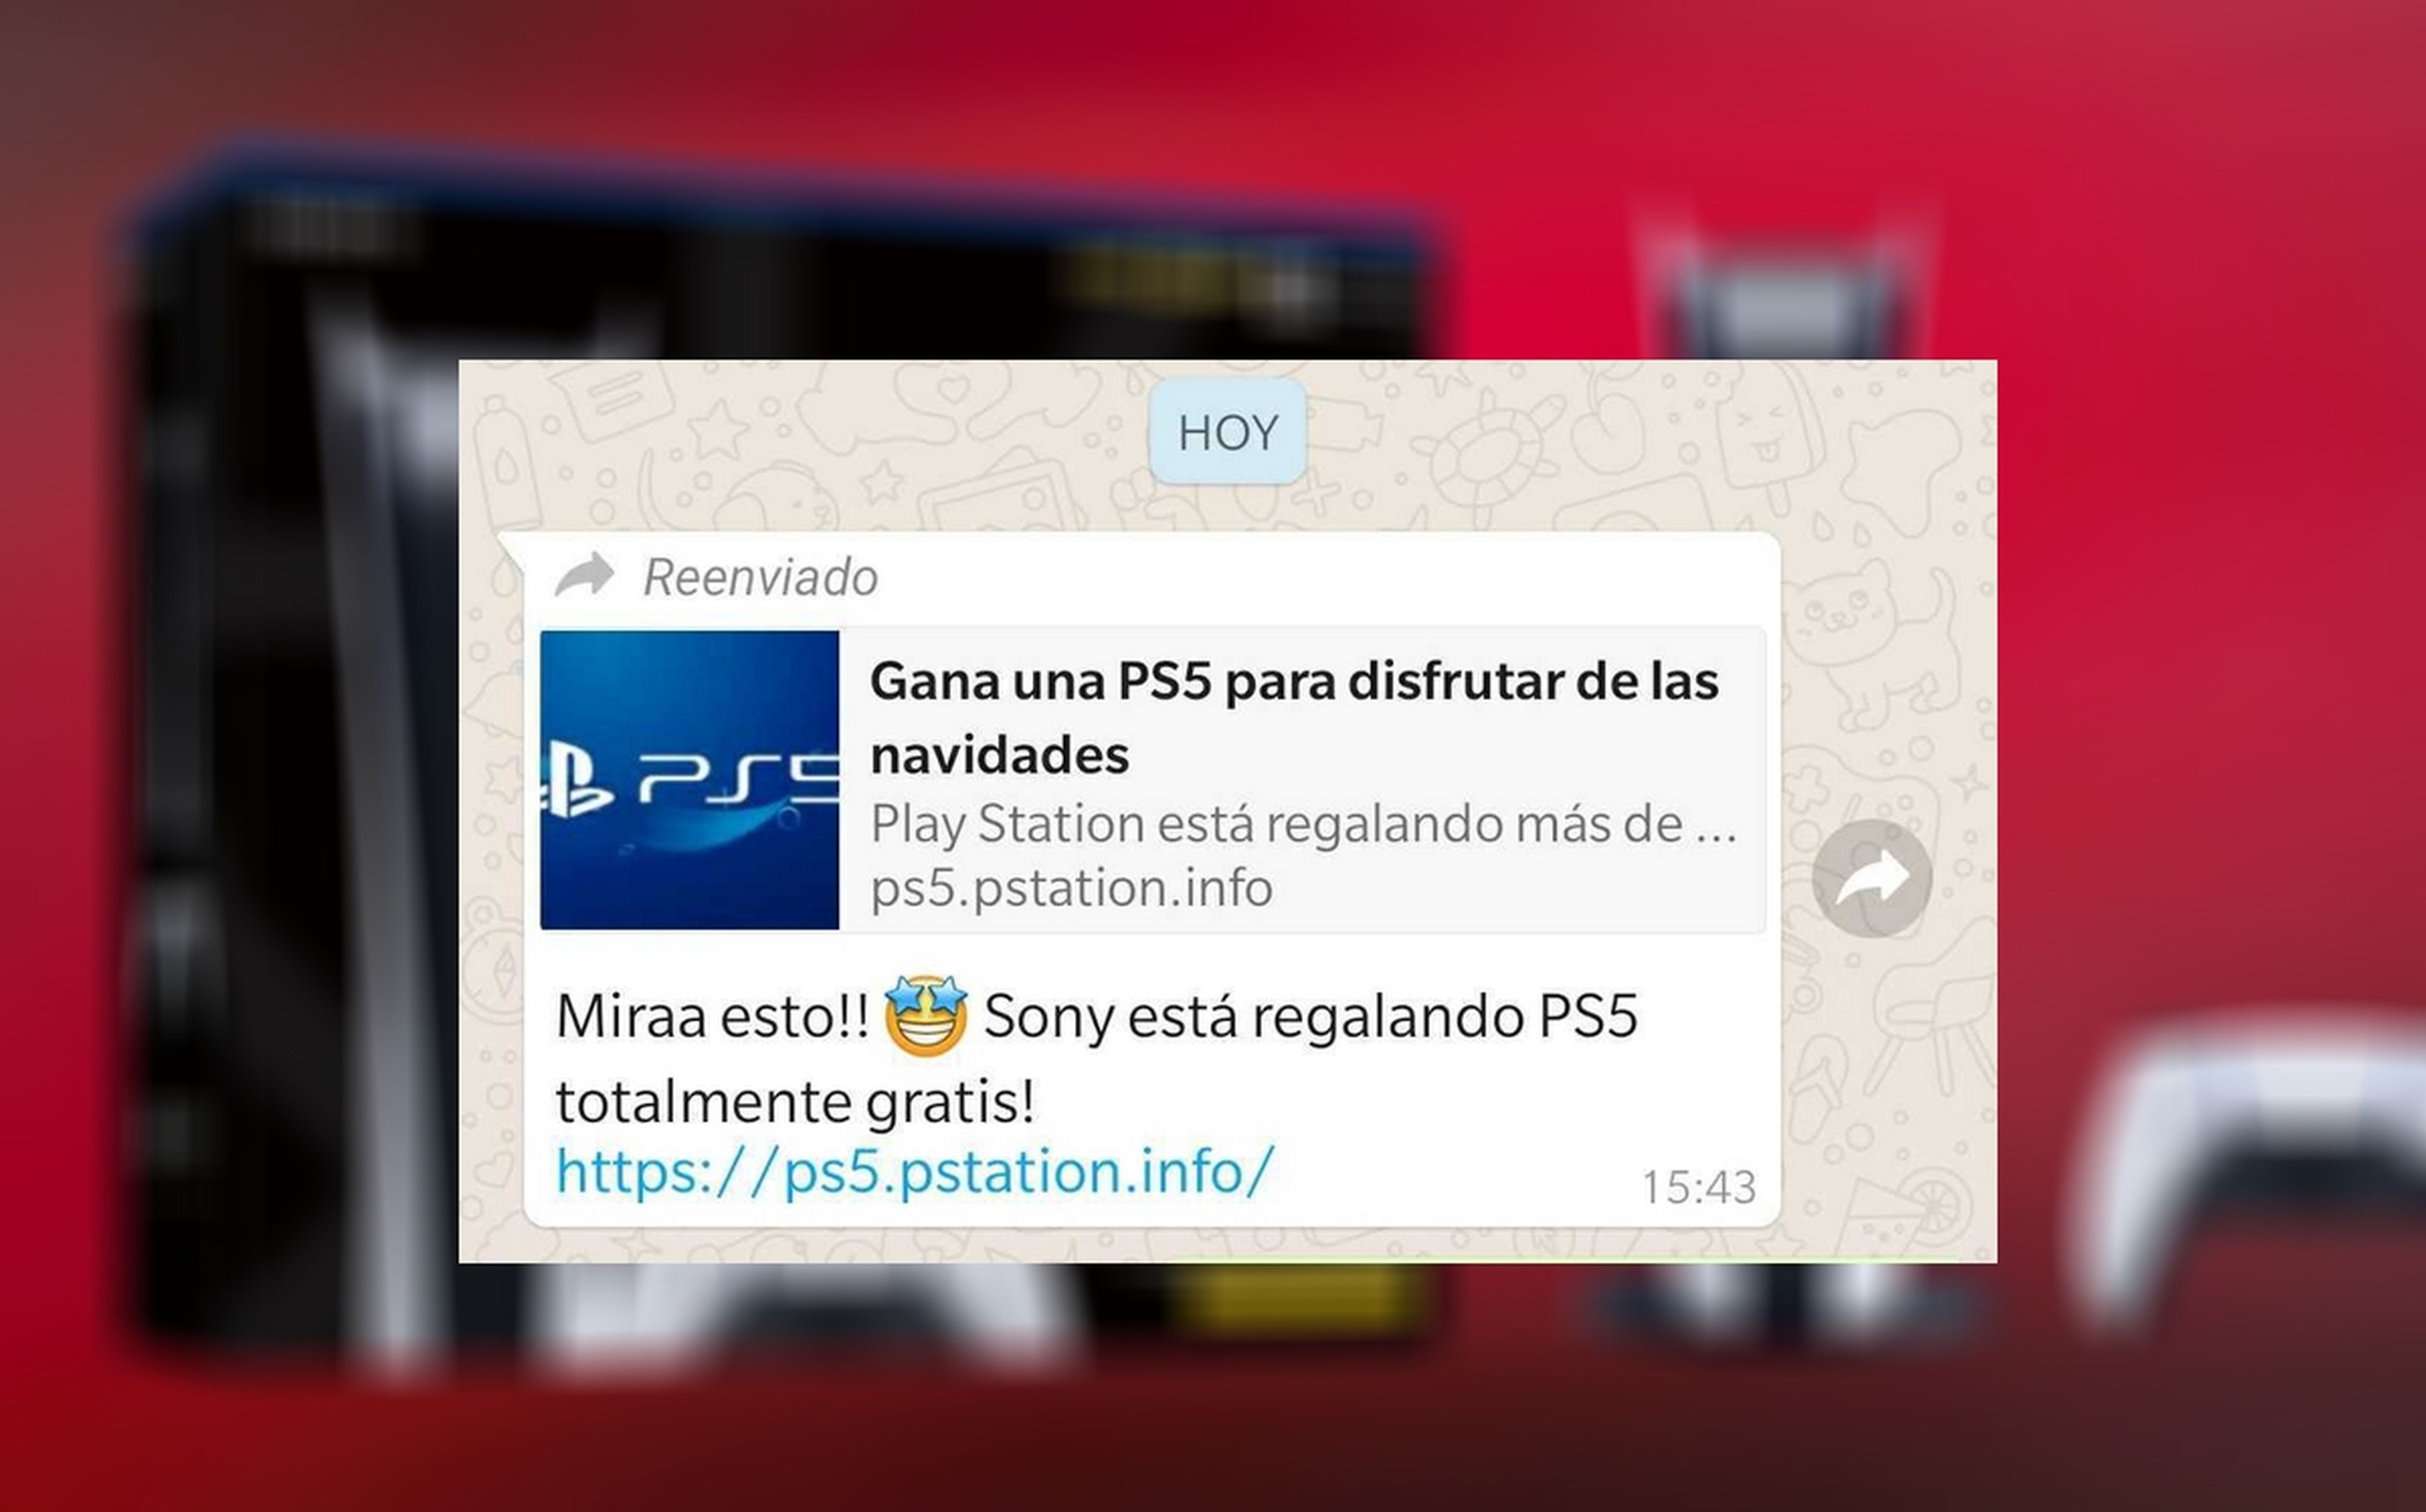 Cuidado con este WhatsApp que afirma que Sony está regalando PS5, es una estafa